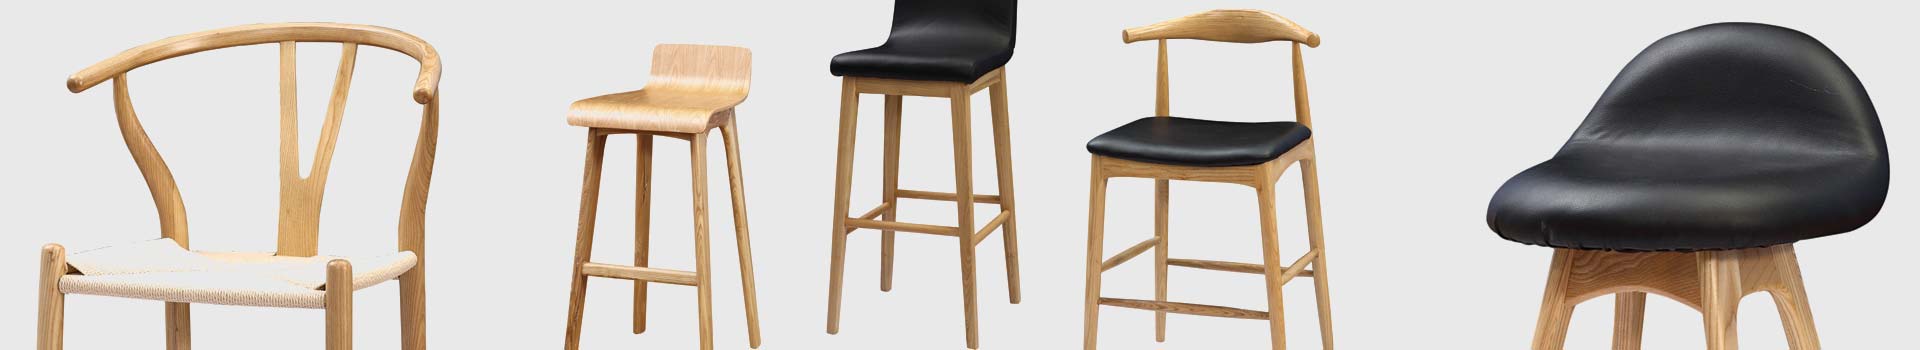 Деревянные стулья придадут интерьеру некий лофт стиль. Стулья АКЛАС